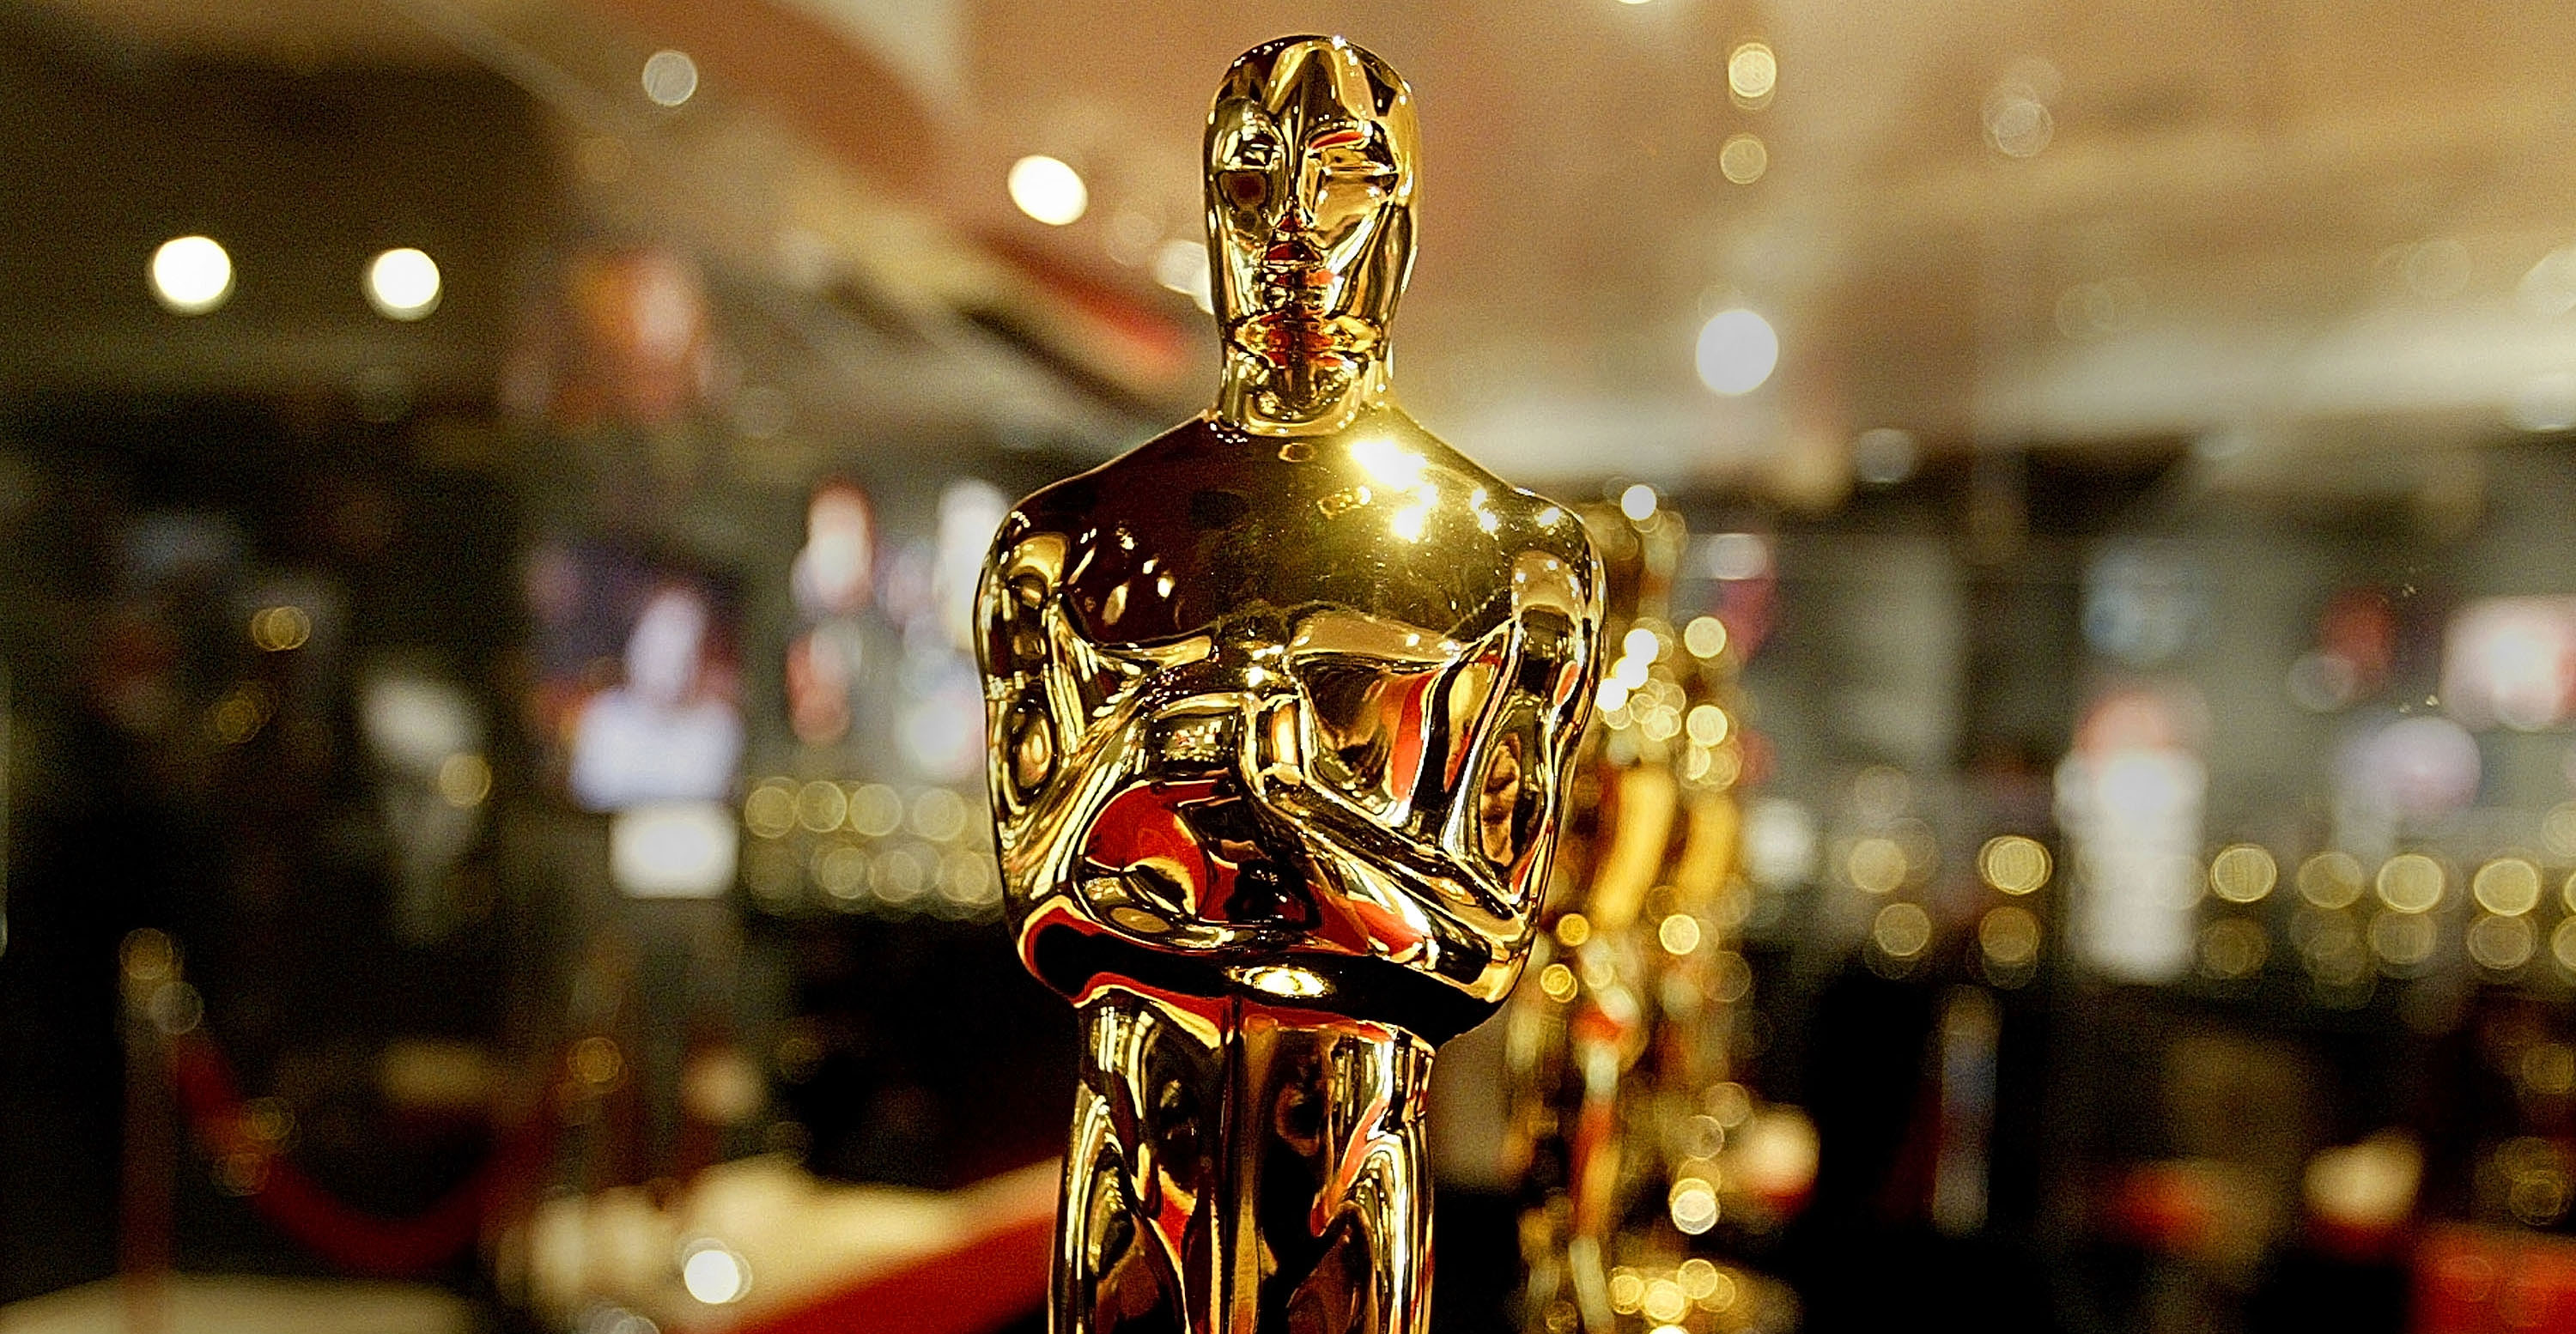 Y a todo esto, ¿los premios Oscar estarían en peligro por la variante Ómicron?